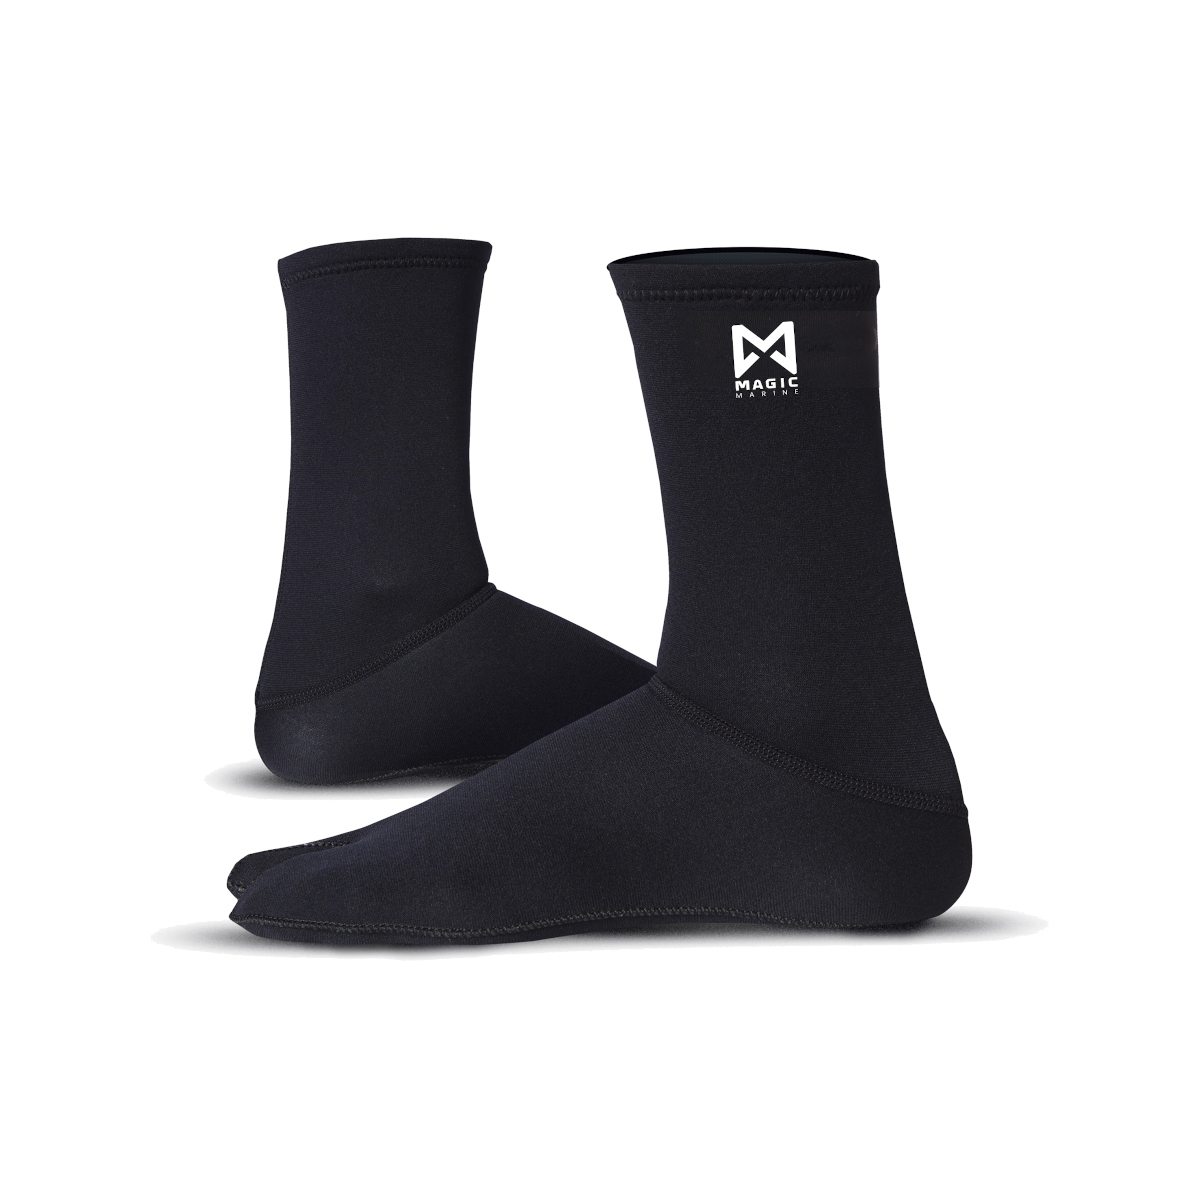 Magic Marine chaussettes néoprène/métalite - noir, taille S